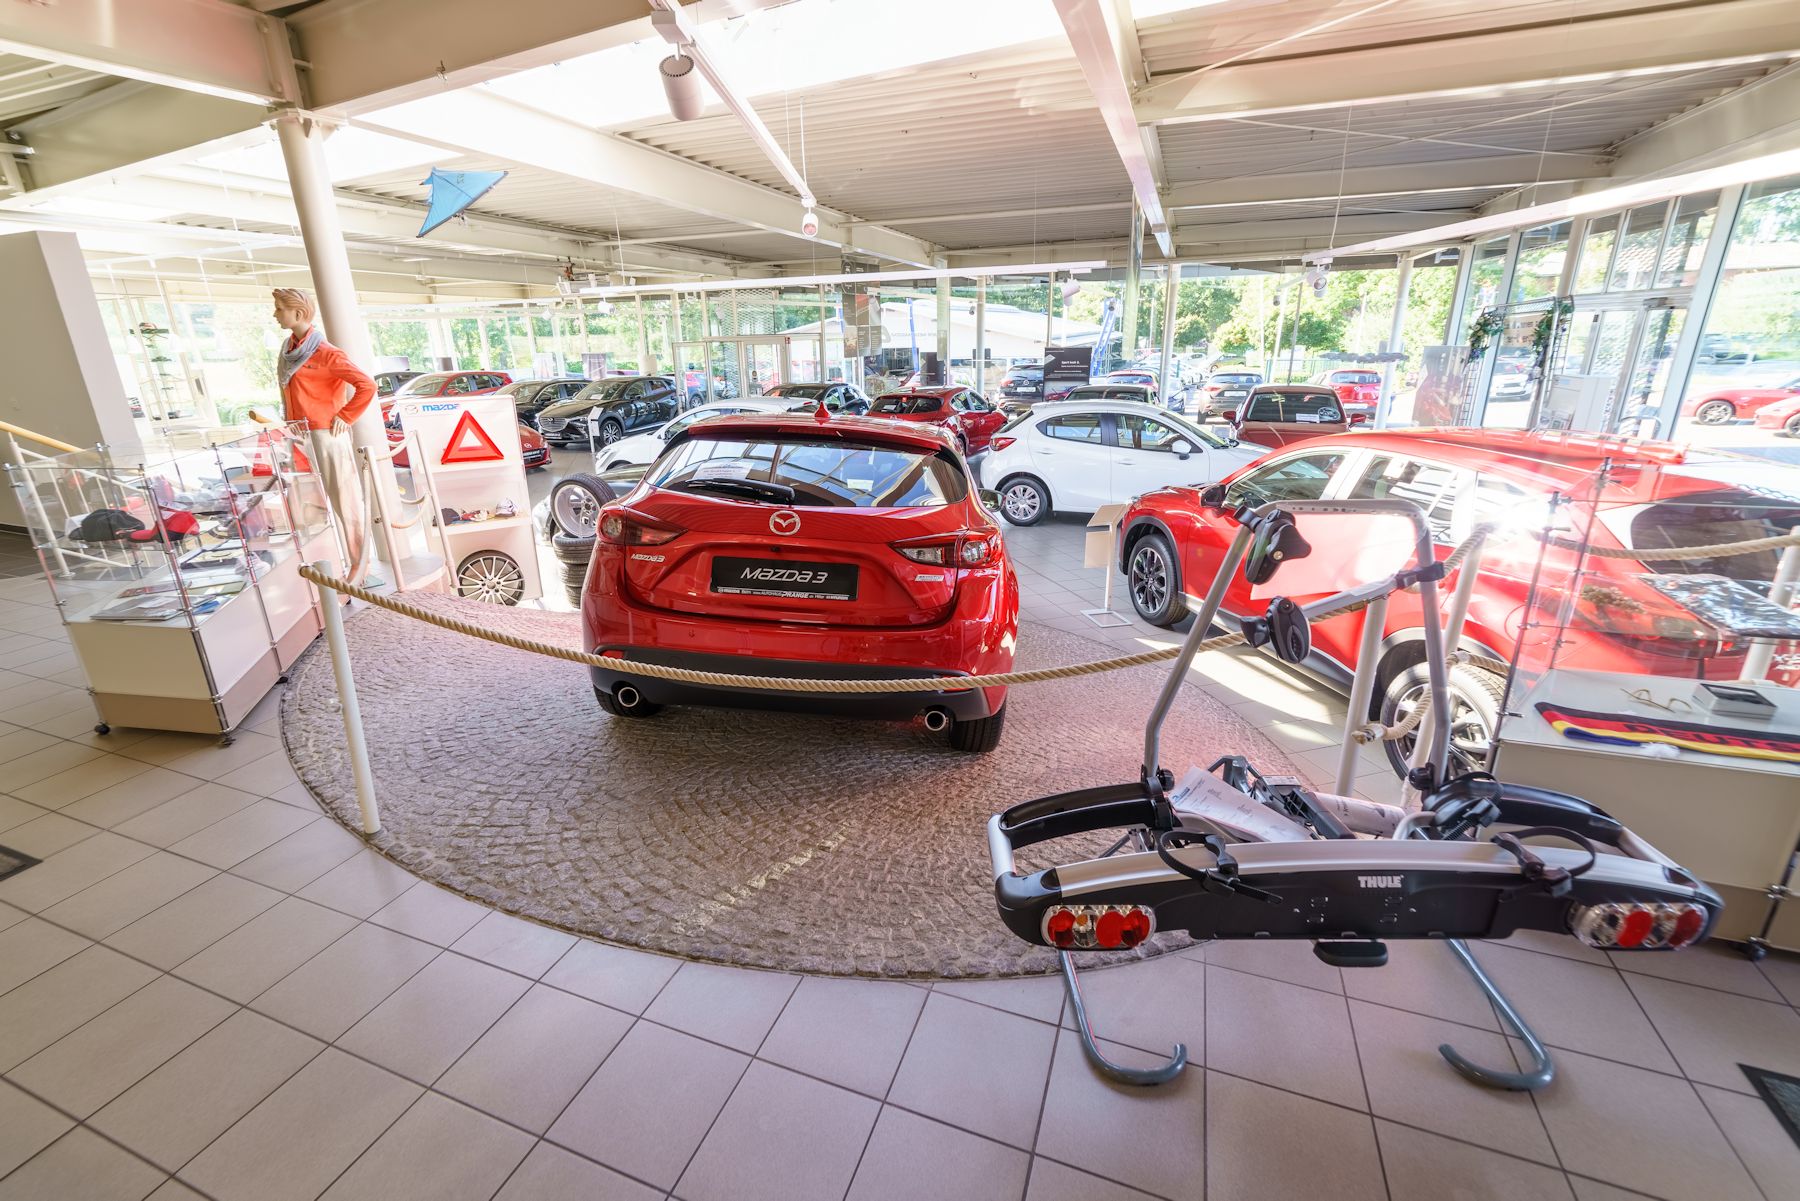 Mazda Cx-5 KF ab 2017 Frontschürze original - Autohaus Prange Online Shop